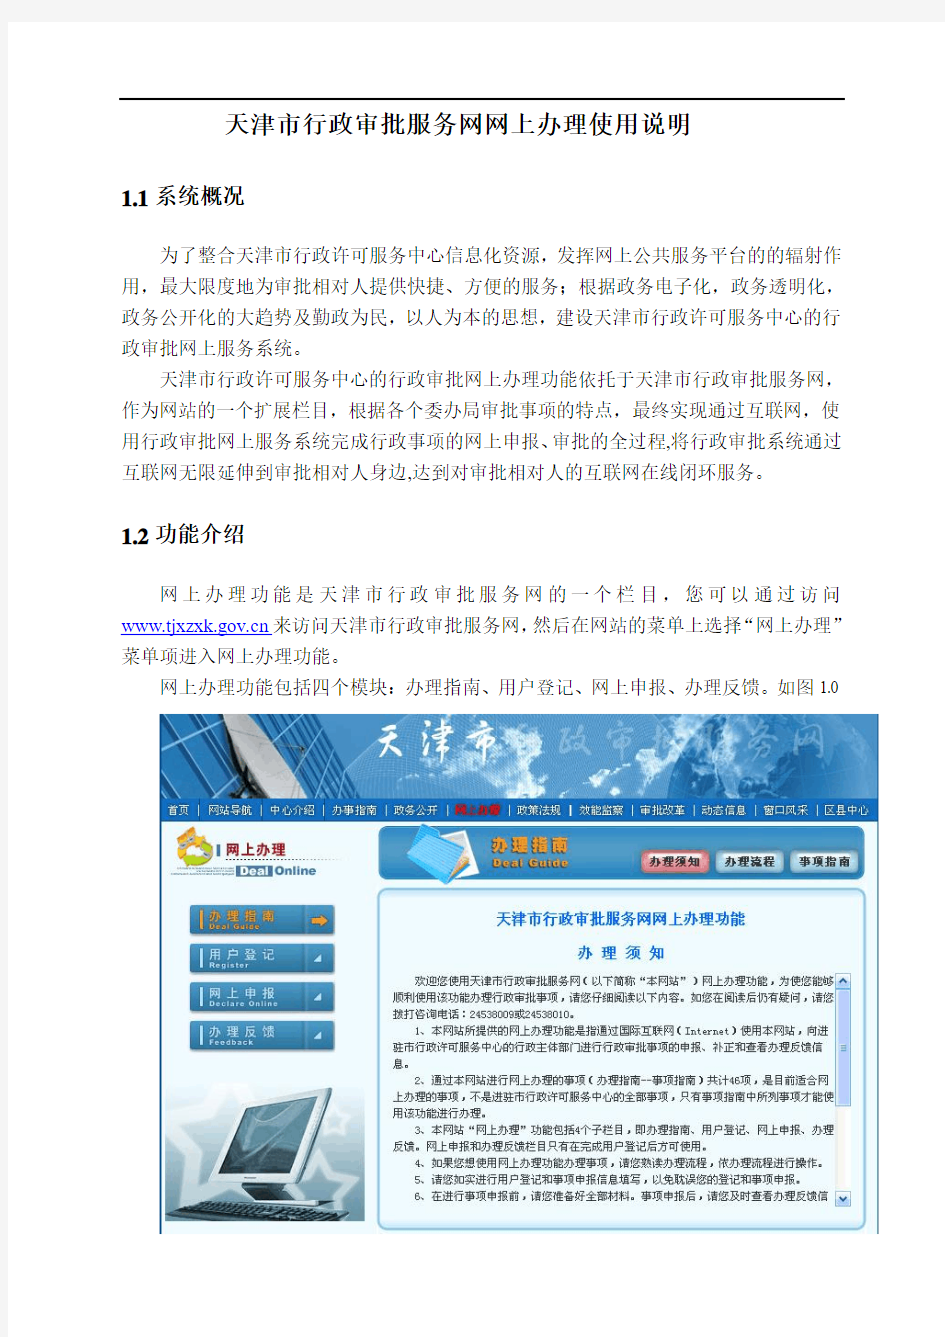 天津市行政审批服务网网上申报使用说明